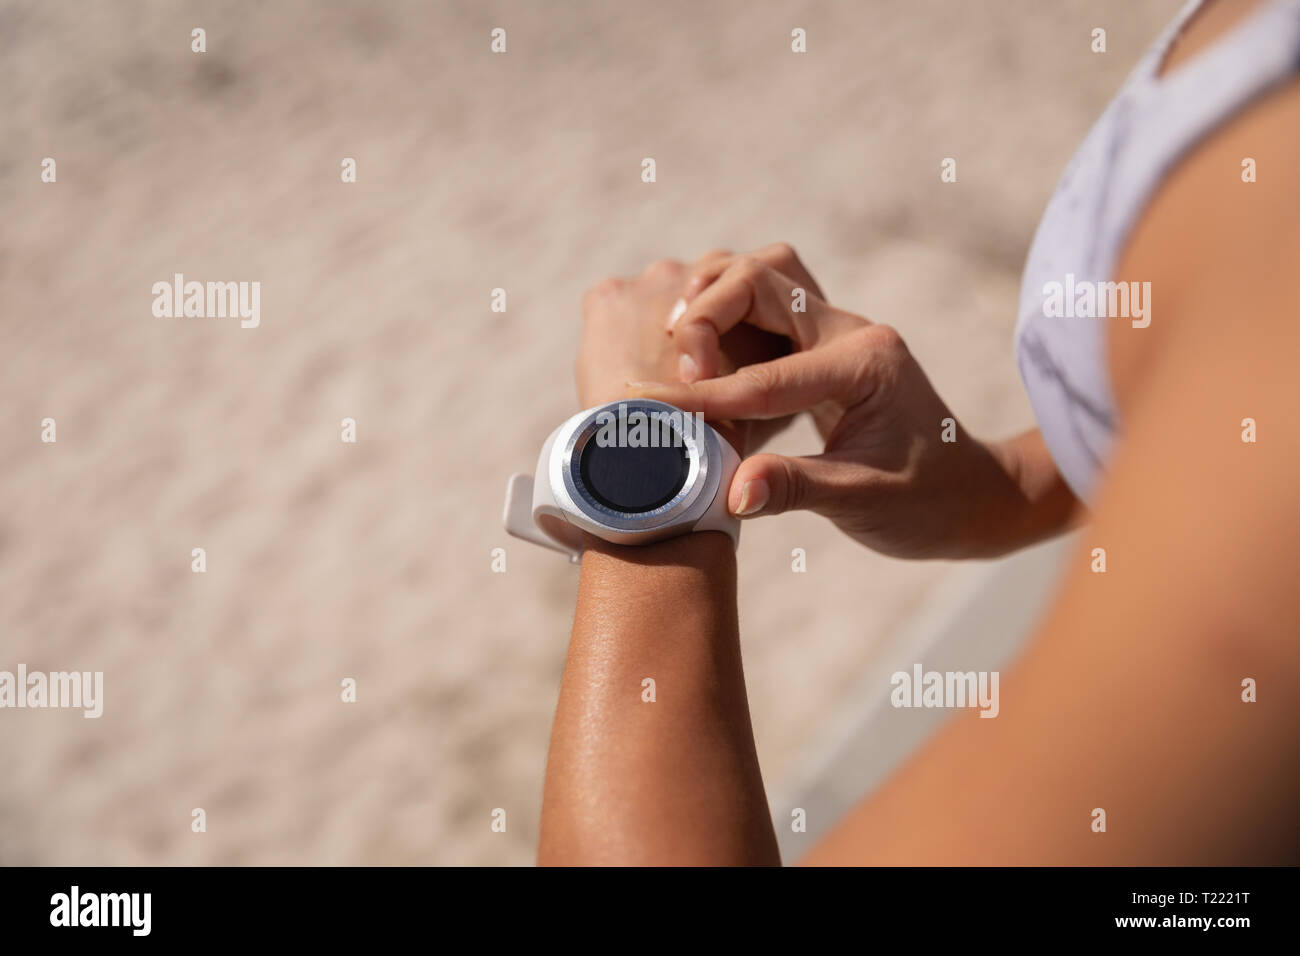 Beautiful woman using smartwatch Stock Photo